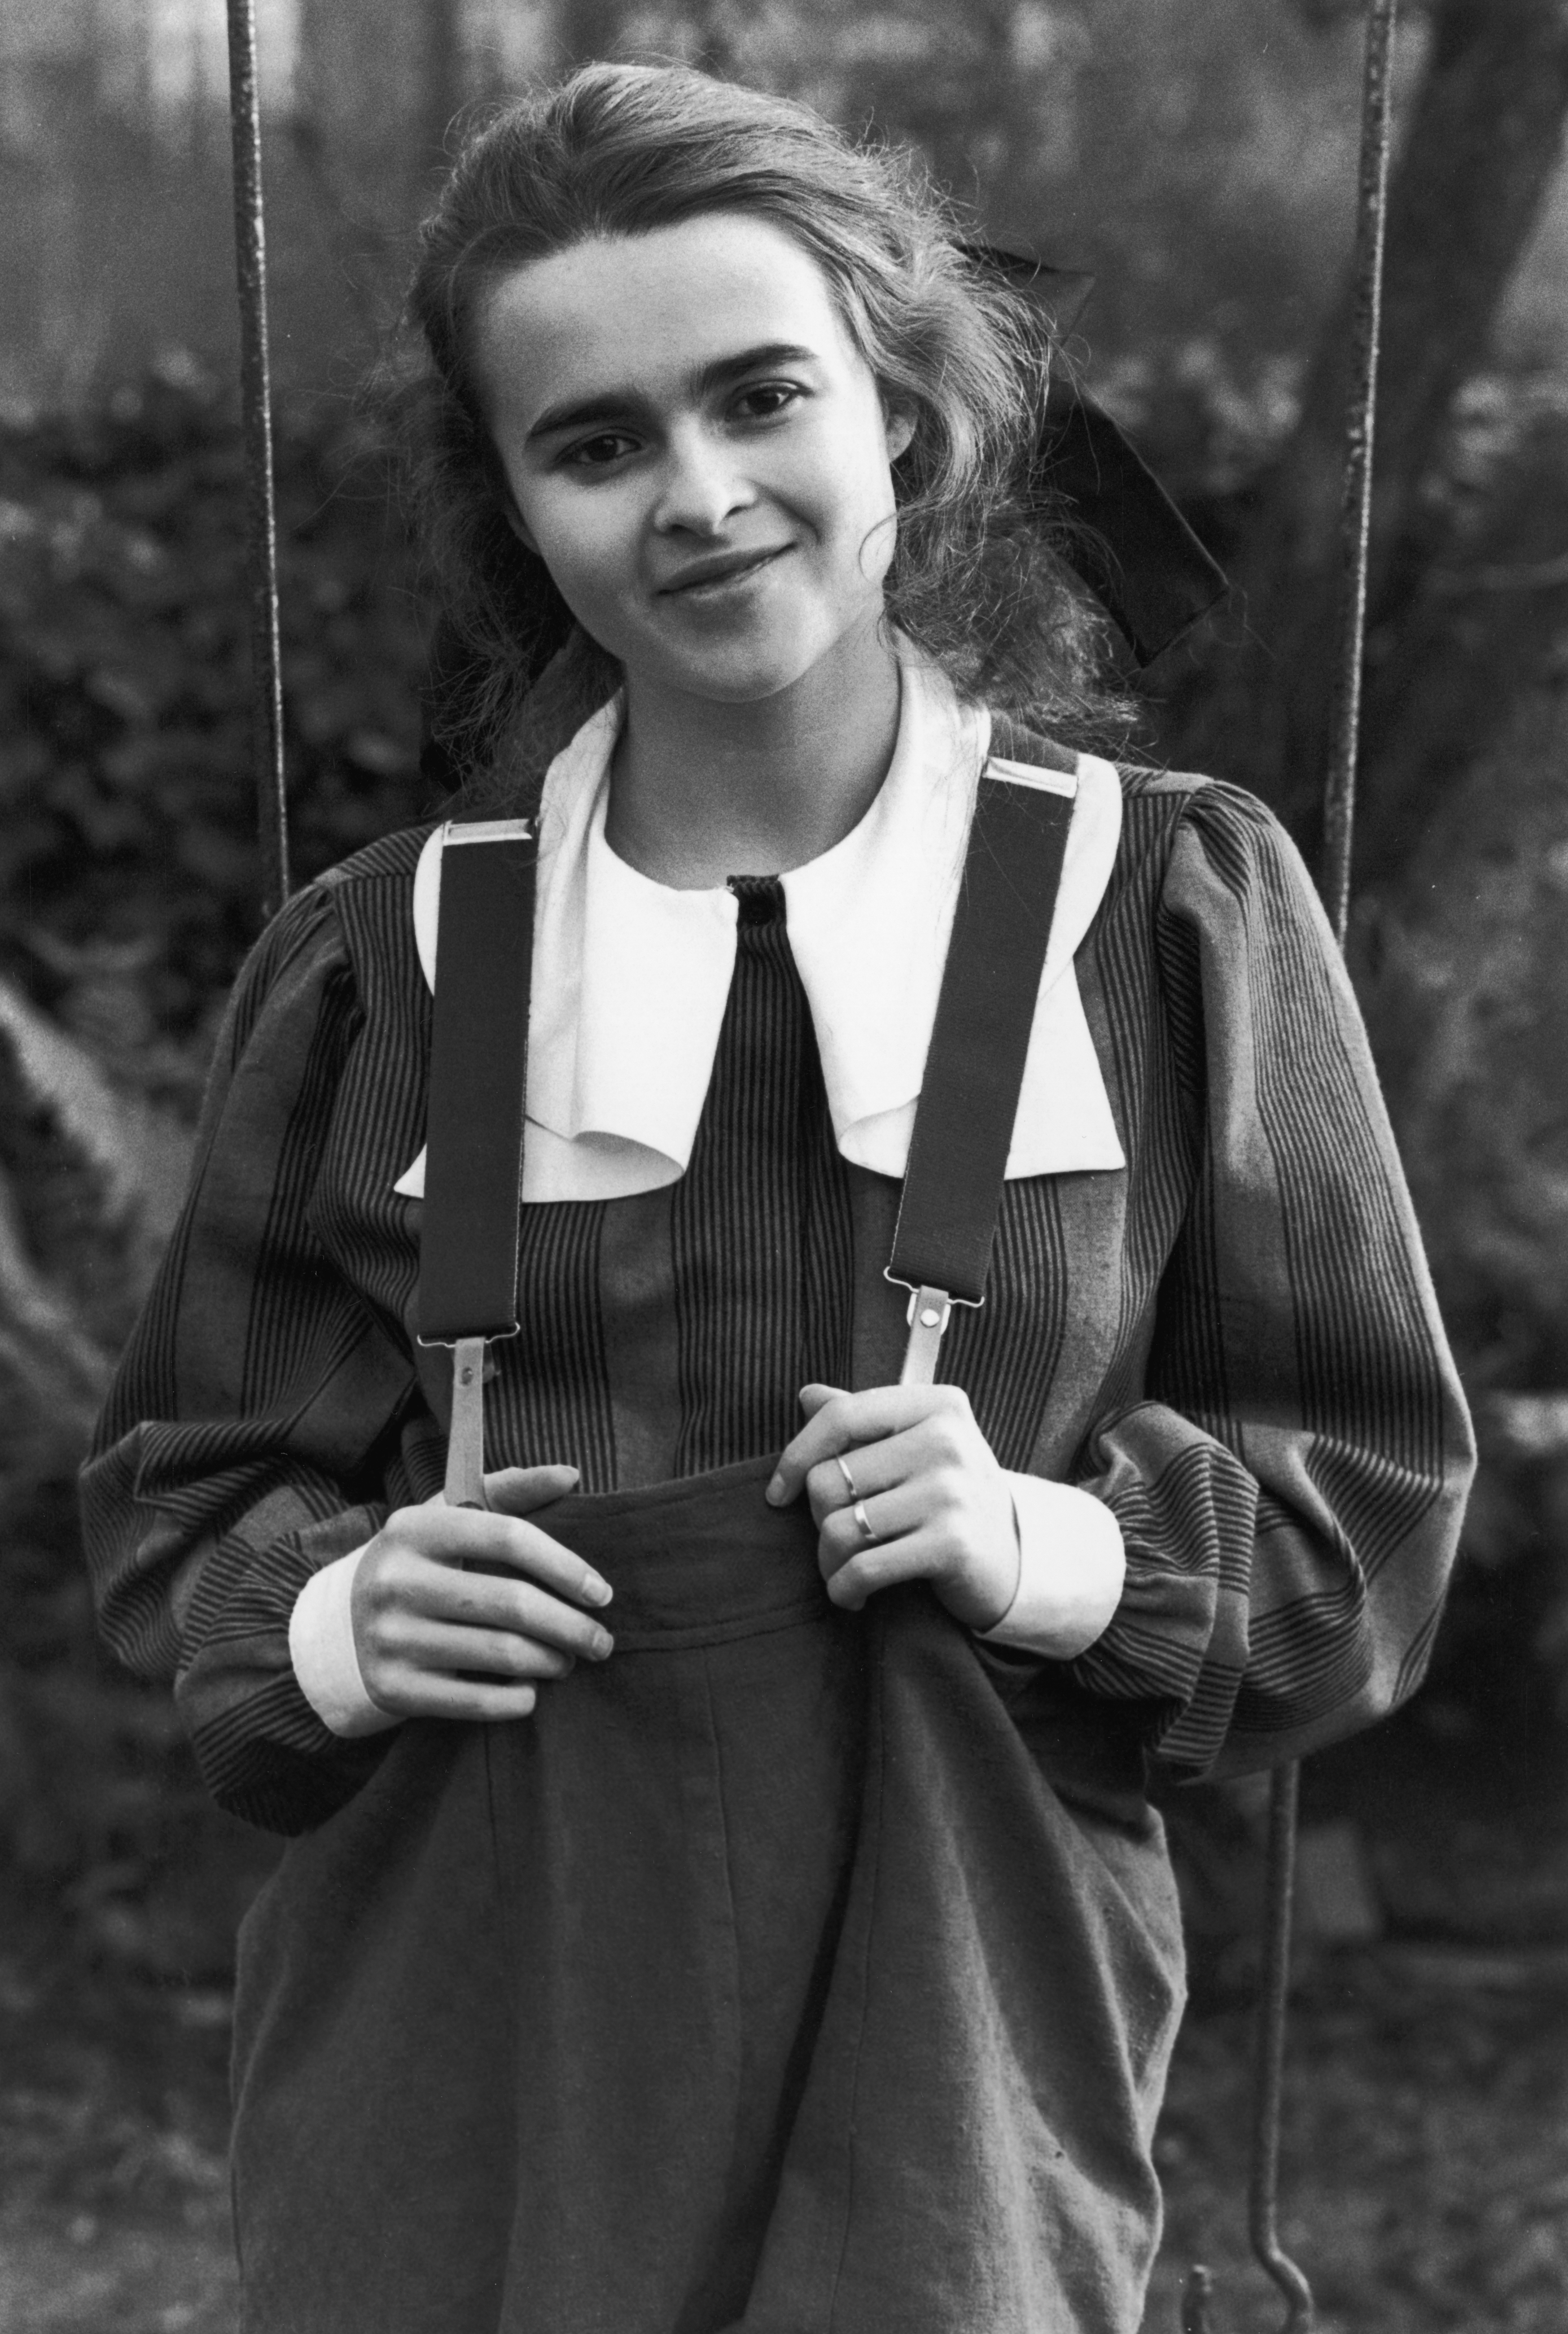 La inglesa Helena Bonham Carter en su adolescencia (Photo by Terry Disney/Express/Getty Images)